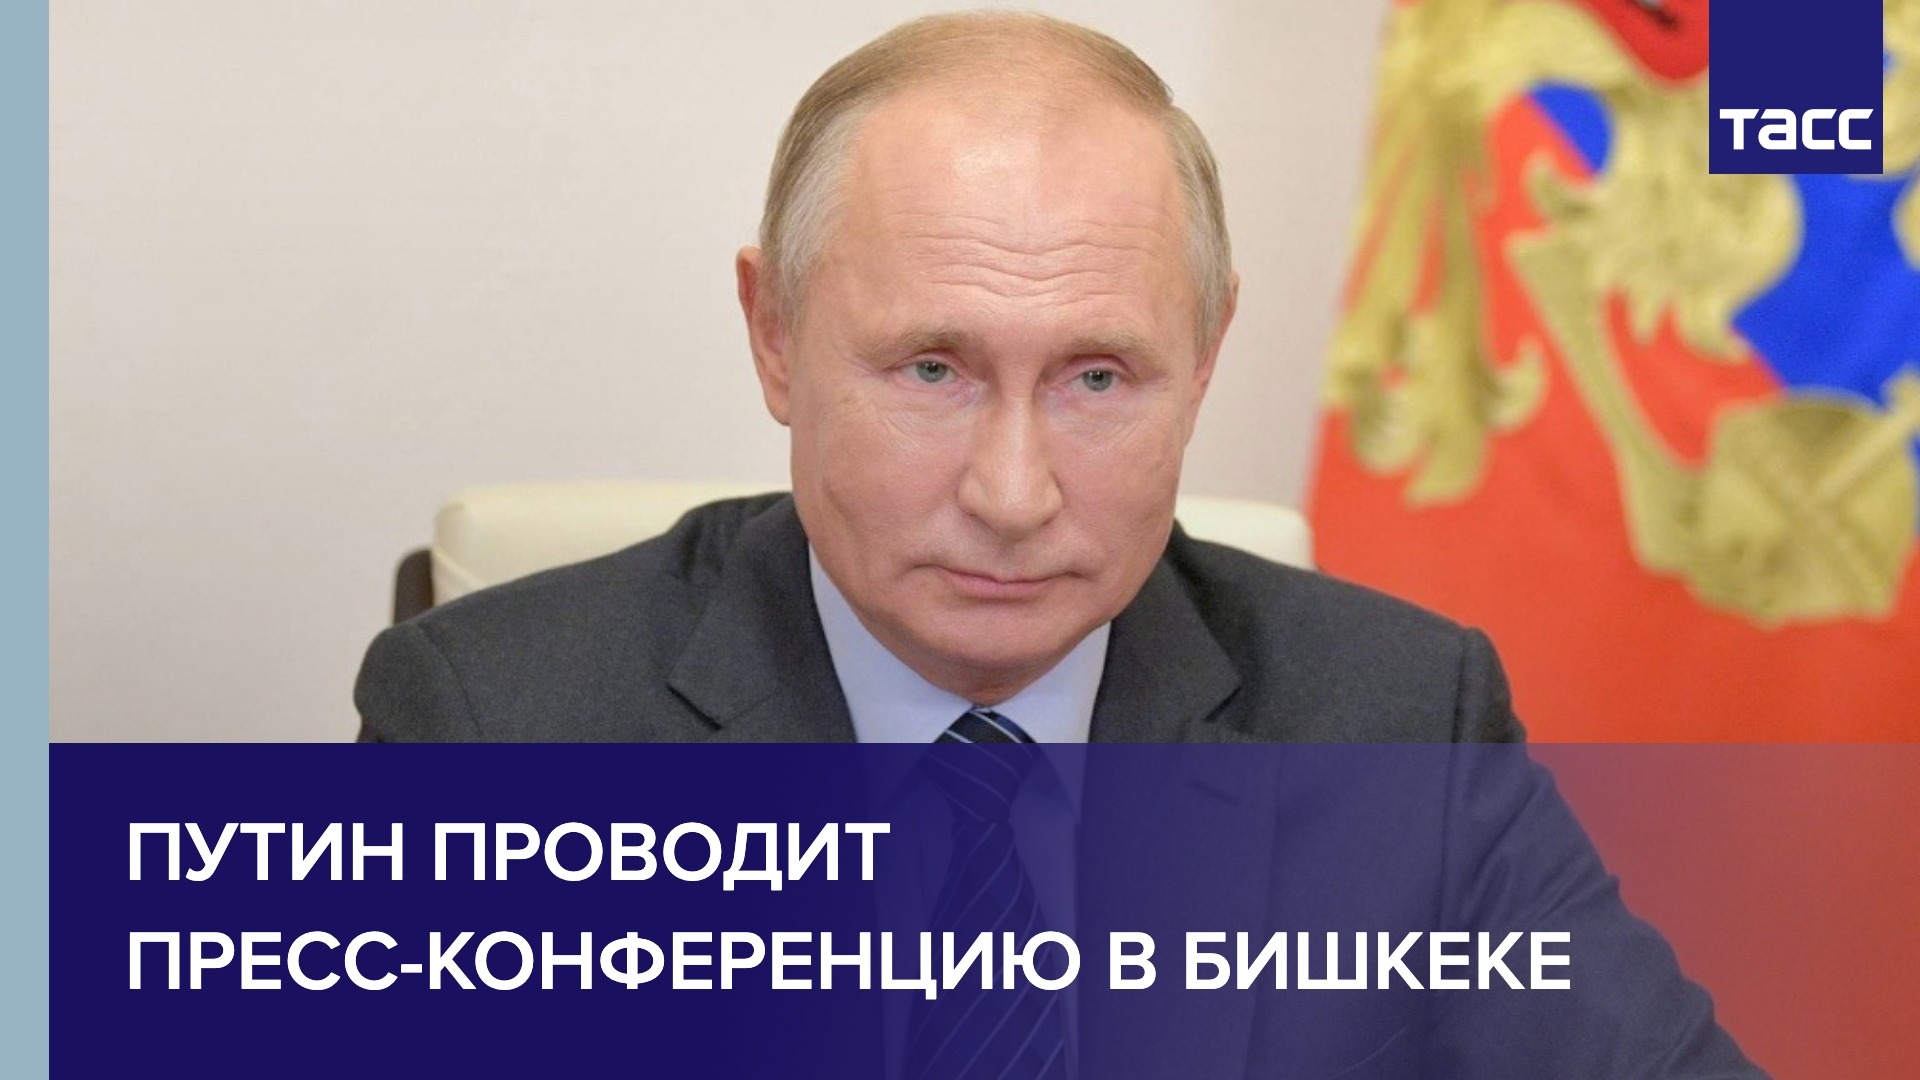 Путин проводит пресс-конференцию в Бишкеке